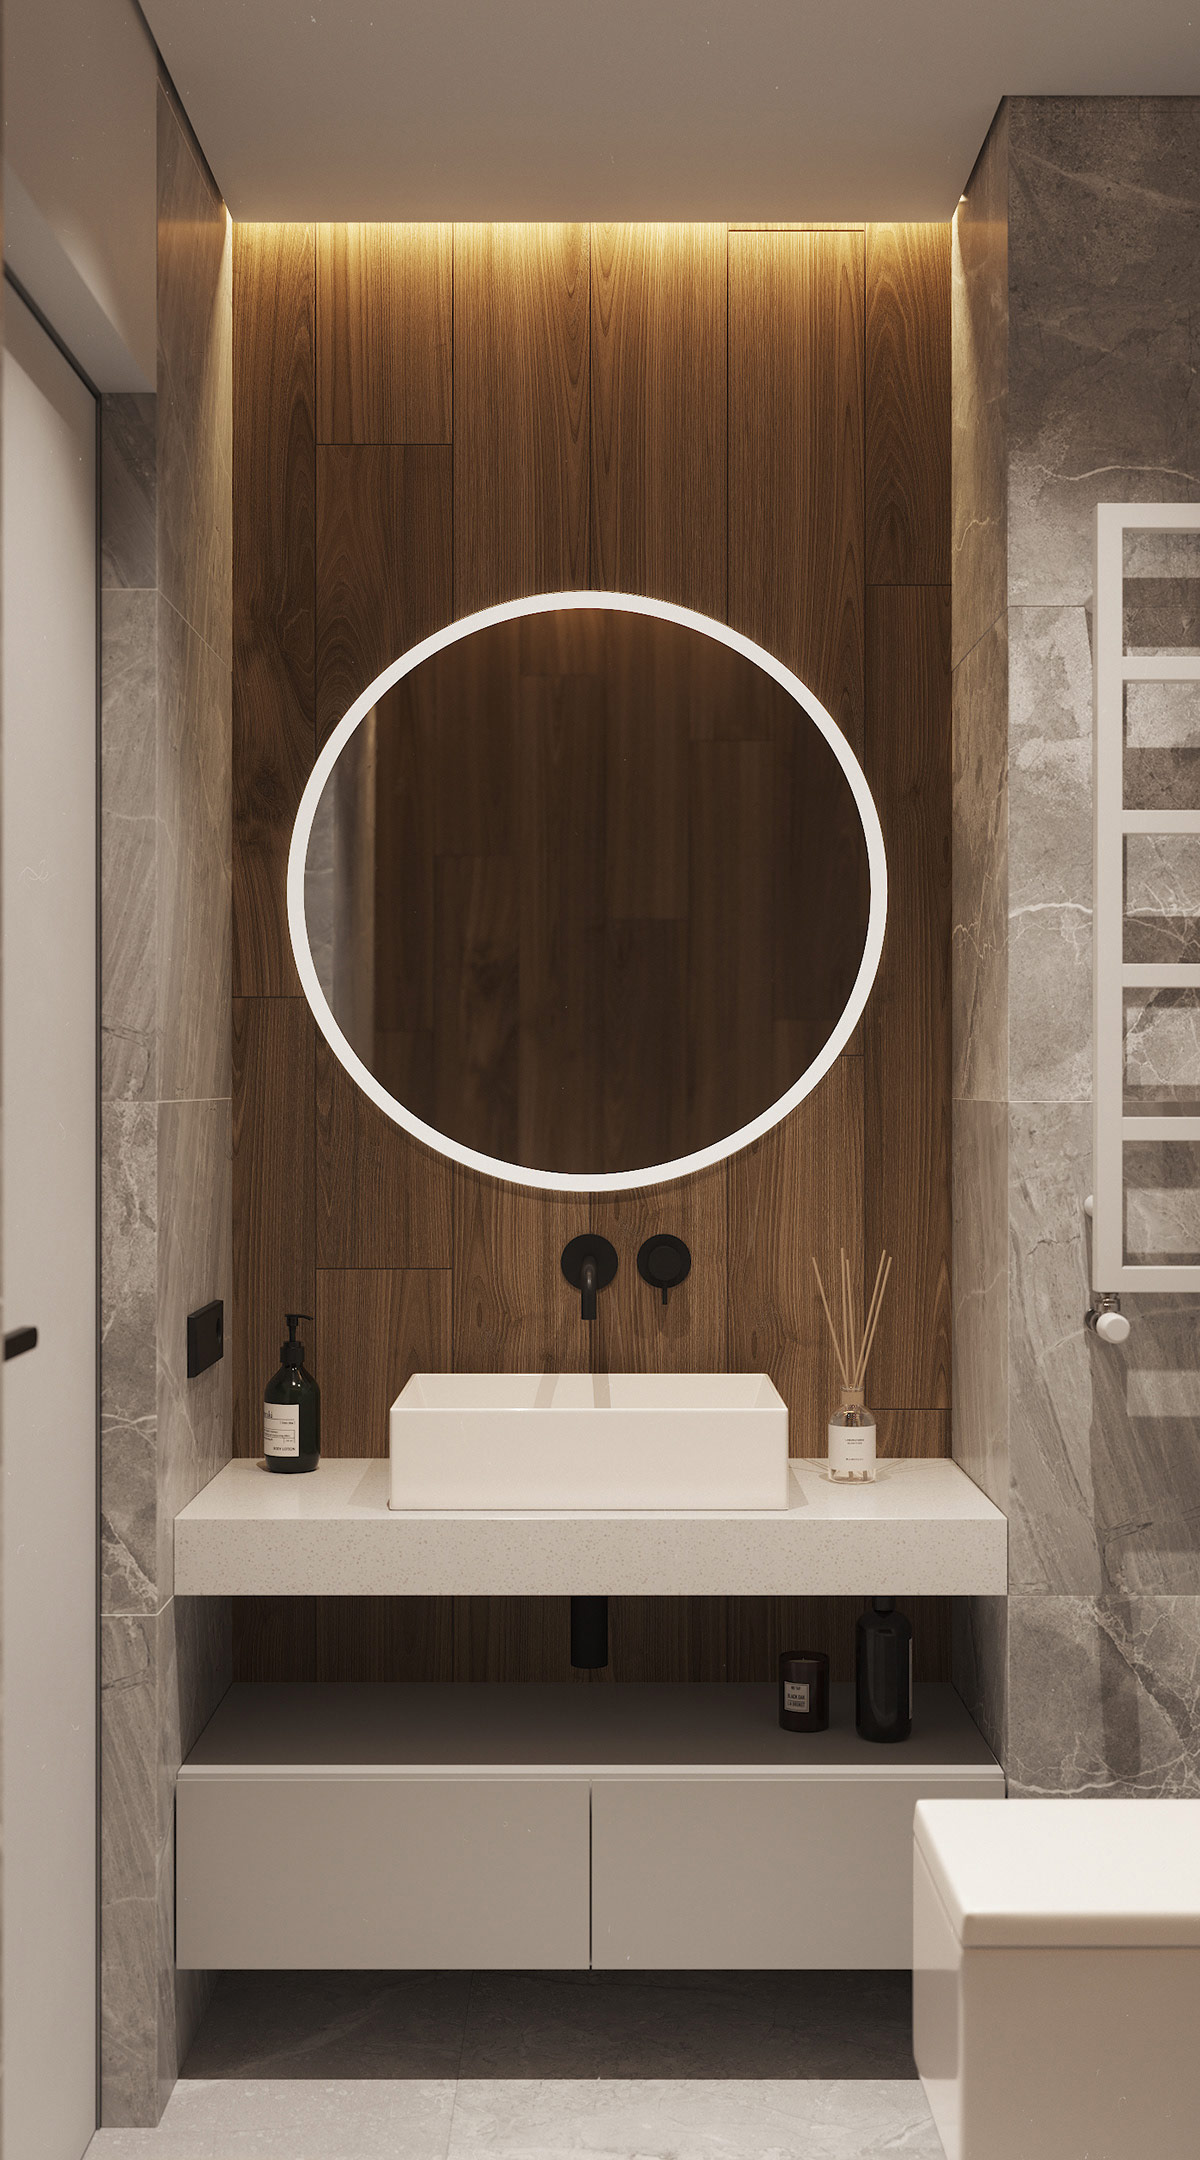 Khu vực bồn rửa mặt nổi bật với gương tròn gắn đèn LED ánh sáng trắng, tương phản với tấm ốp gỗ sẫm màu.